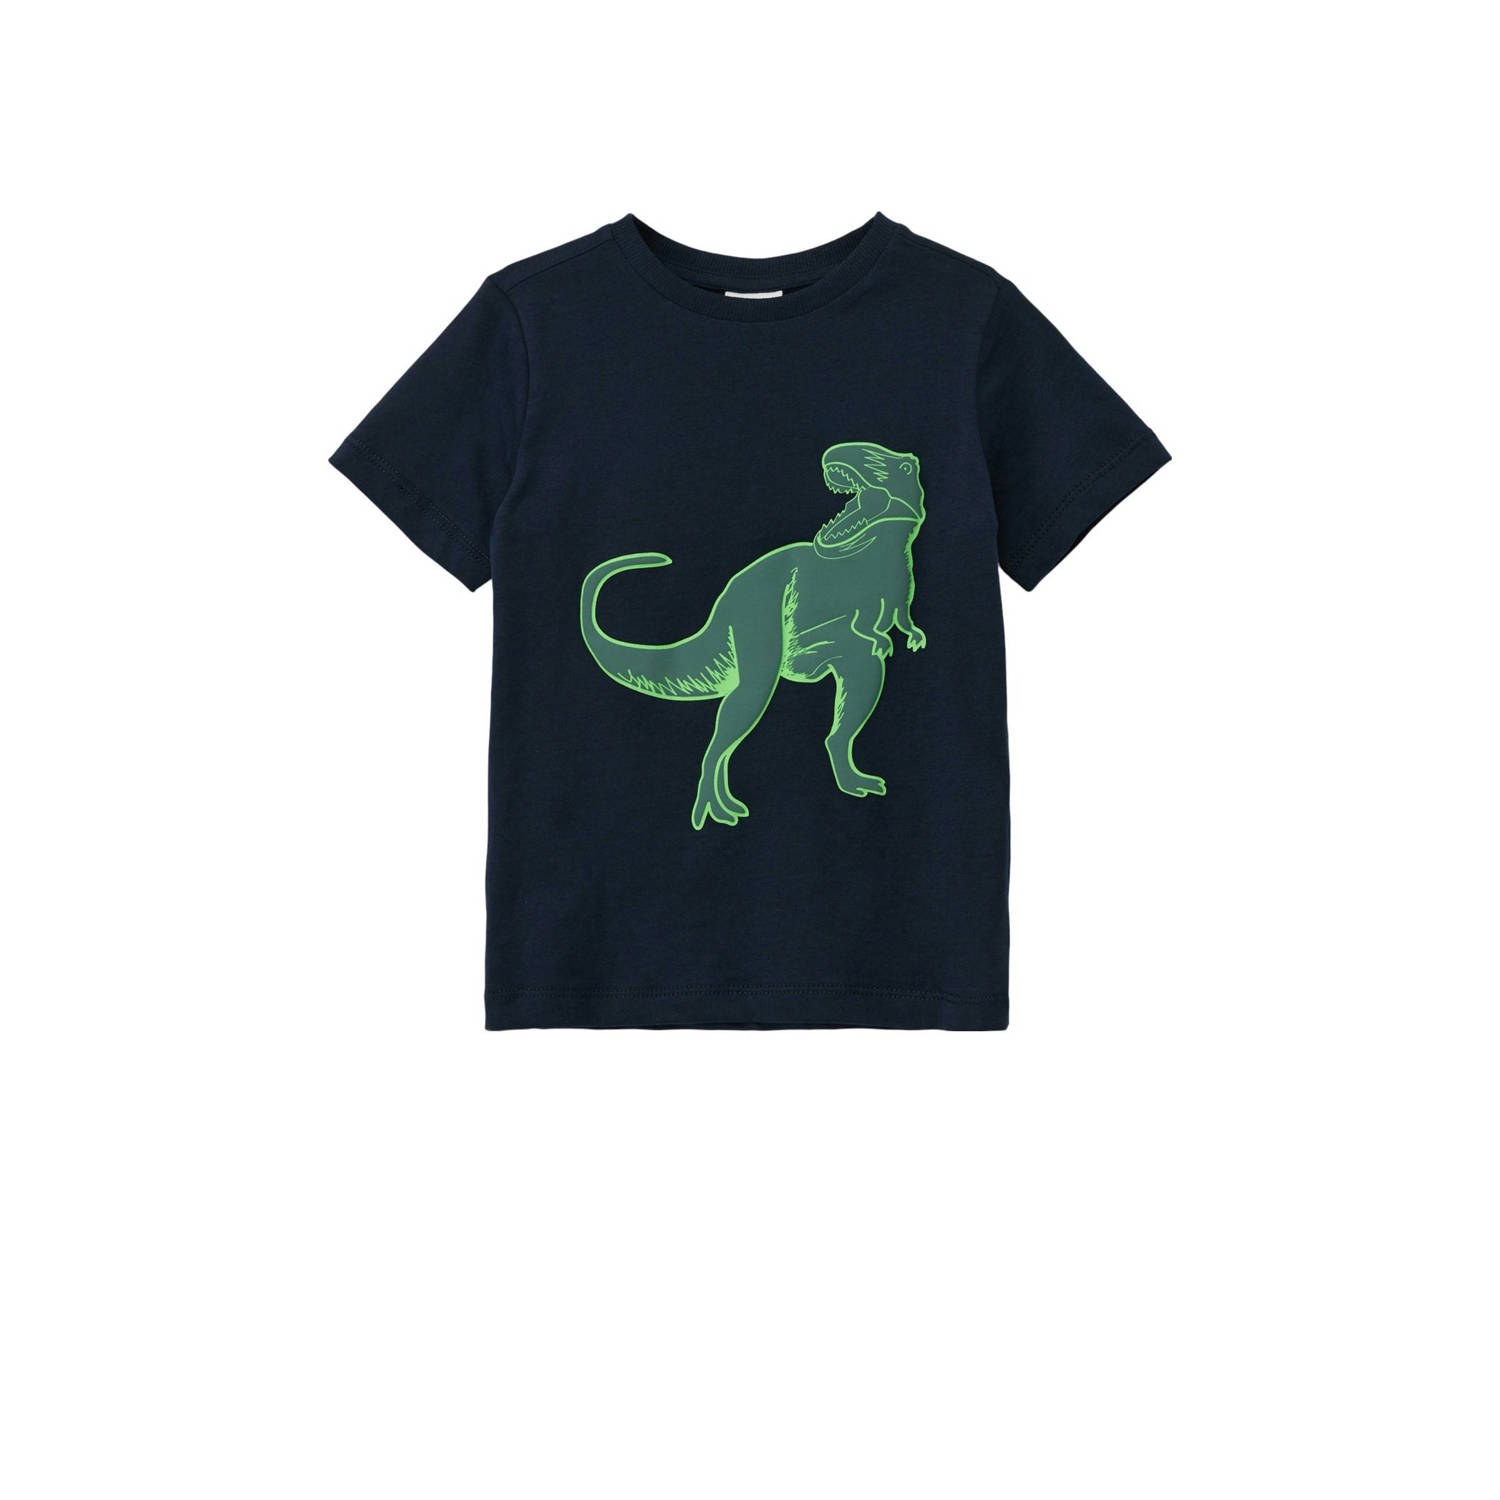 S.Oliver T-shirt met printopdruk donkerblauw Jongens Katoen Ronde hals 104 110